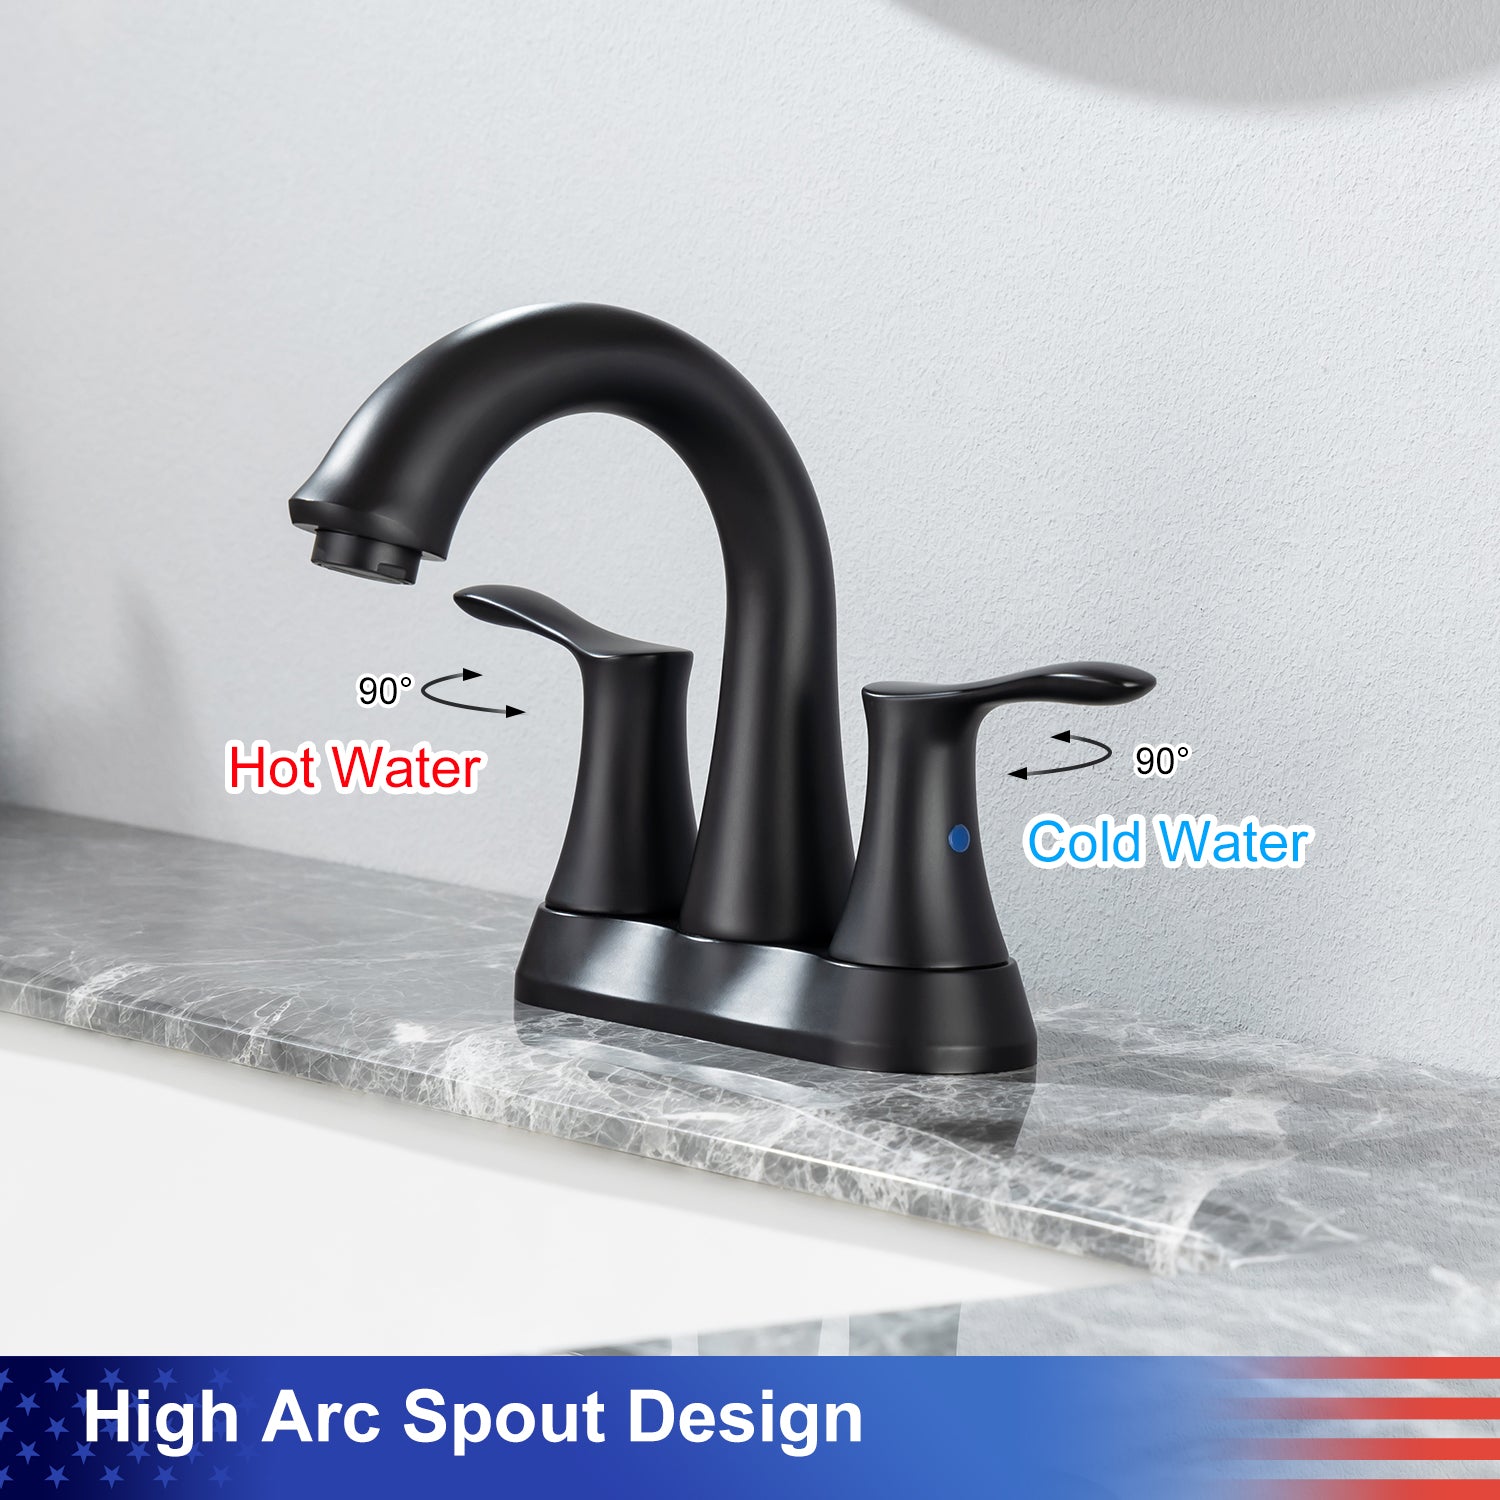 [Rainlex RX3007] Centerset Faucet 2-handle Bathroom Faucet with Drain Assembly